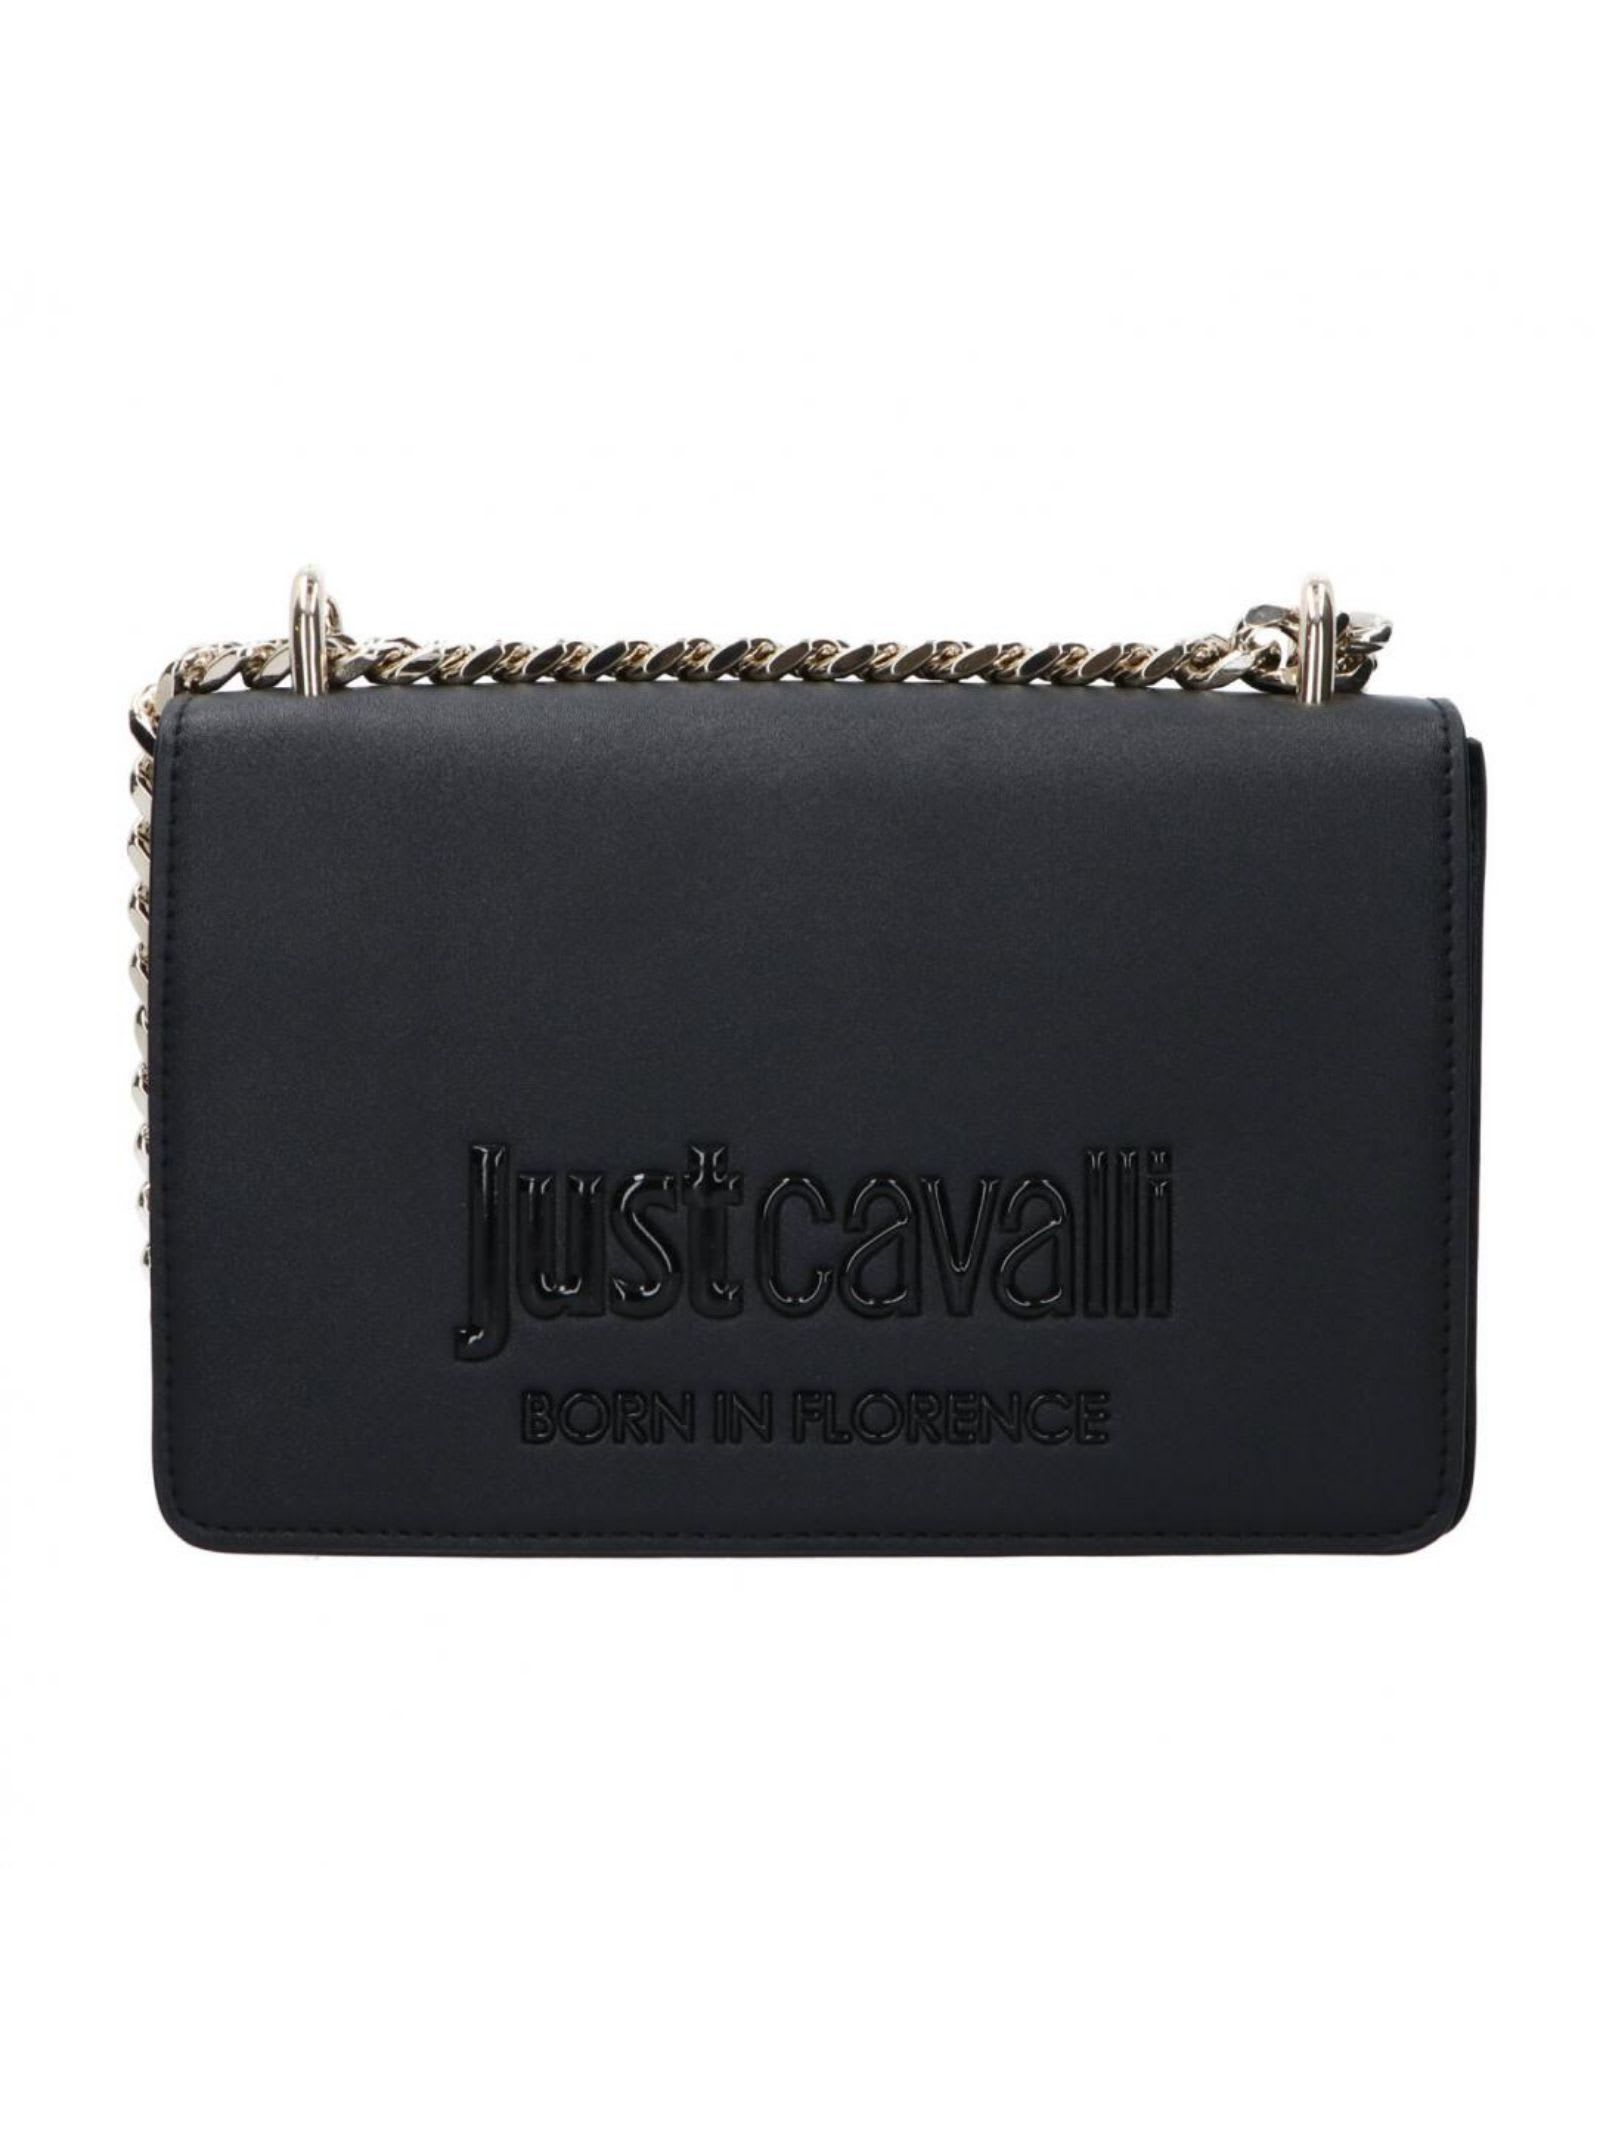 Roberto Cavalli Just Cavalli Bag In Black